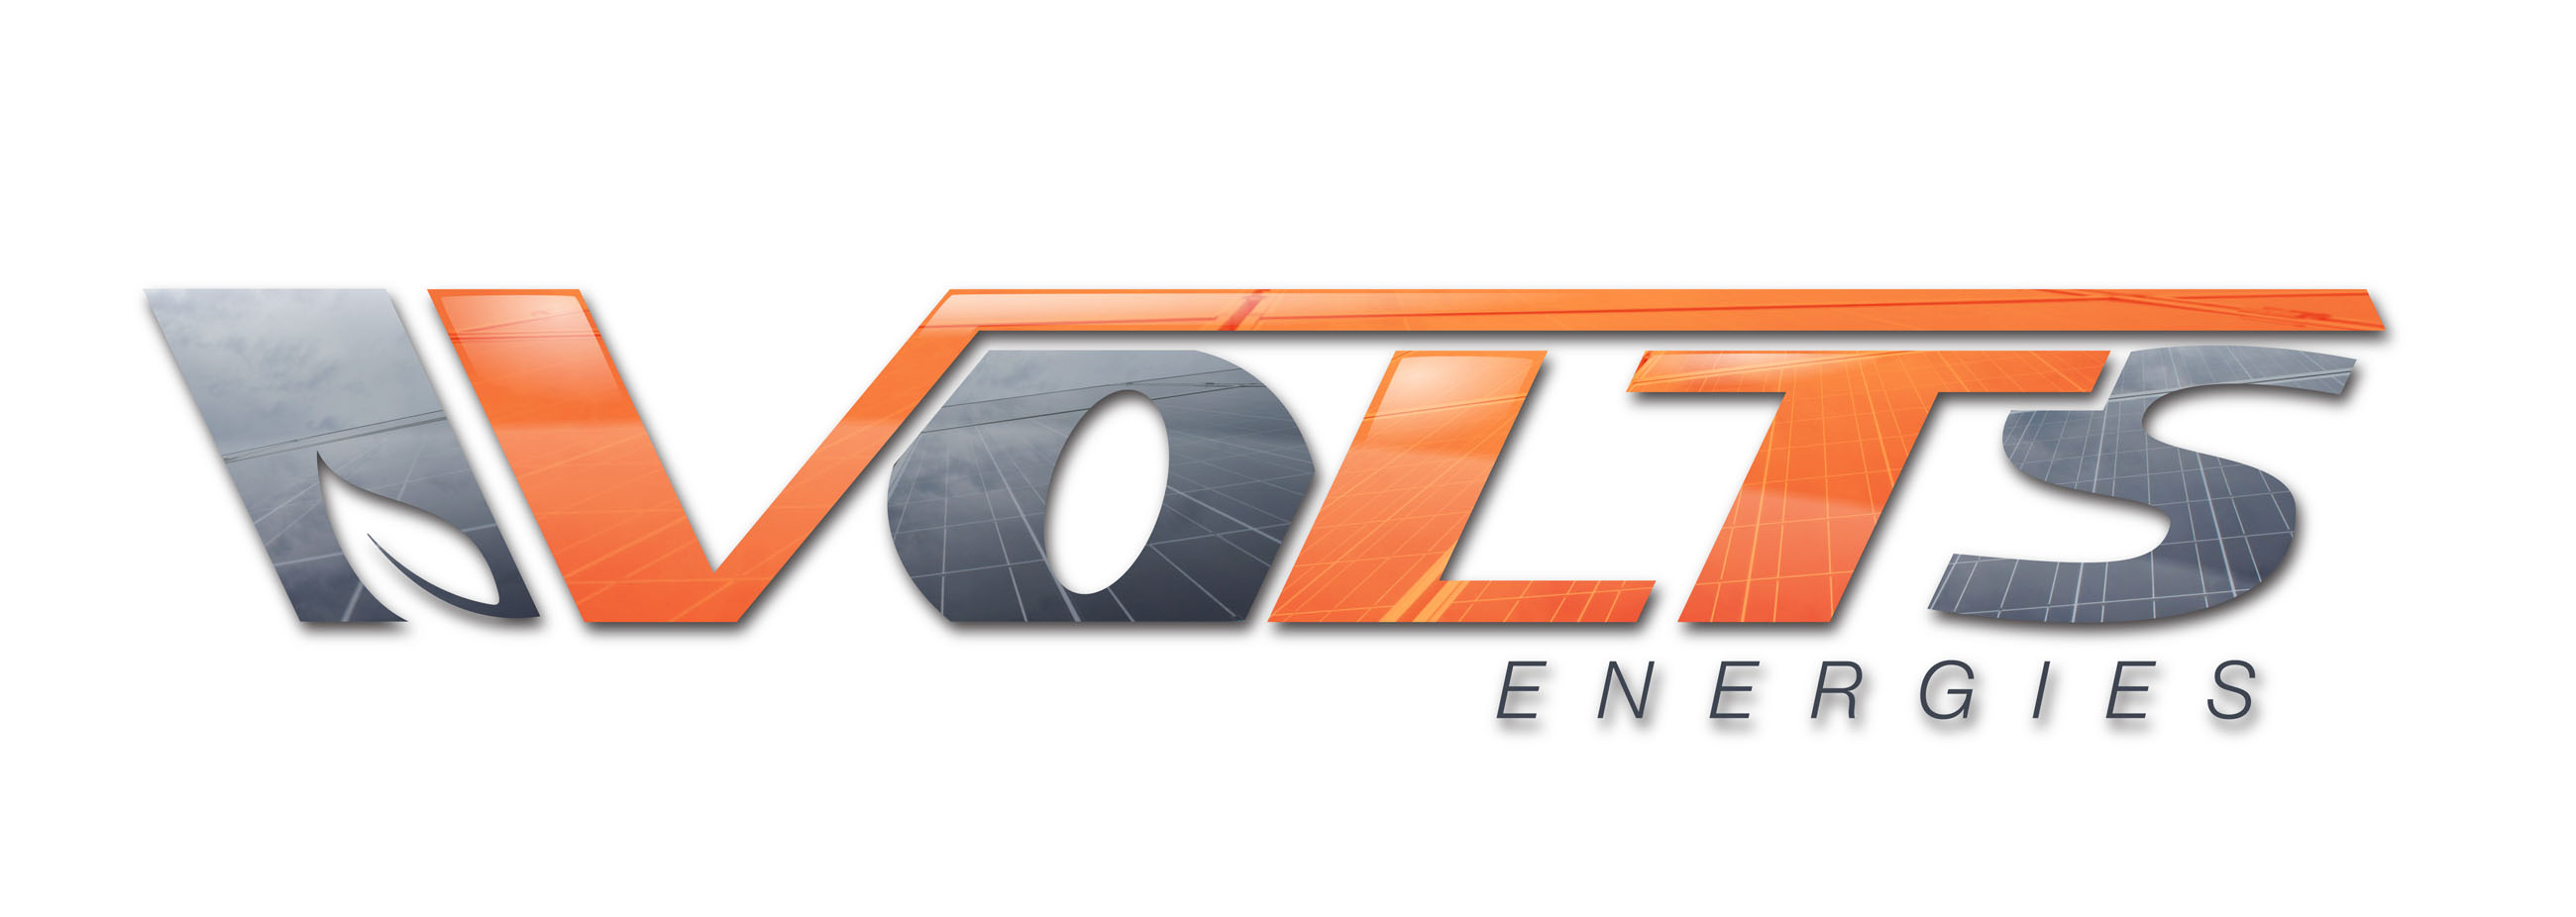 VOLTS ENERGIES 2013 MRES